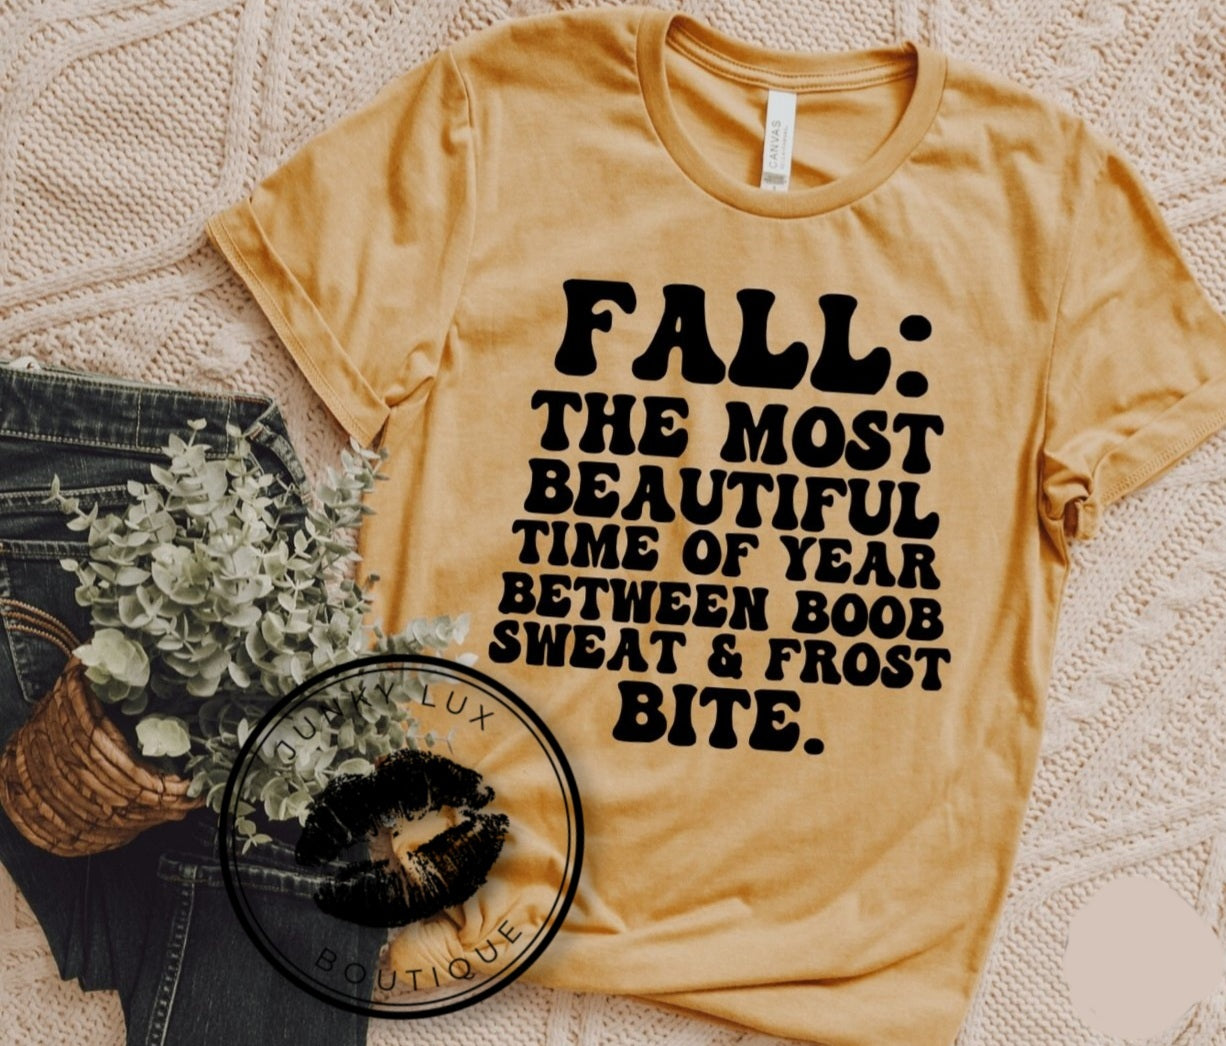 Fall: